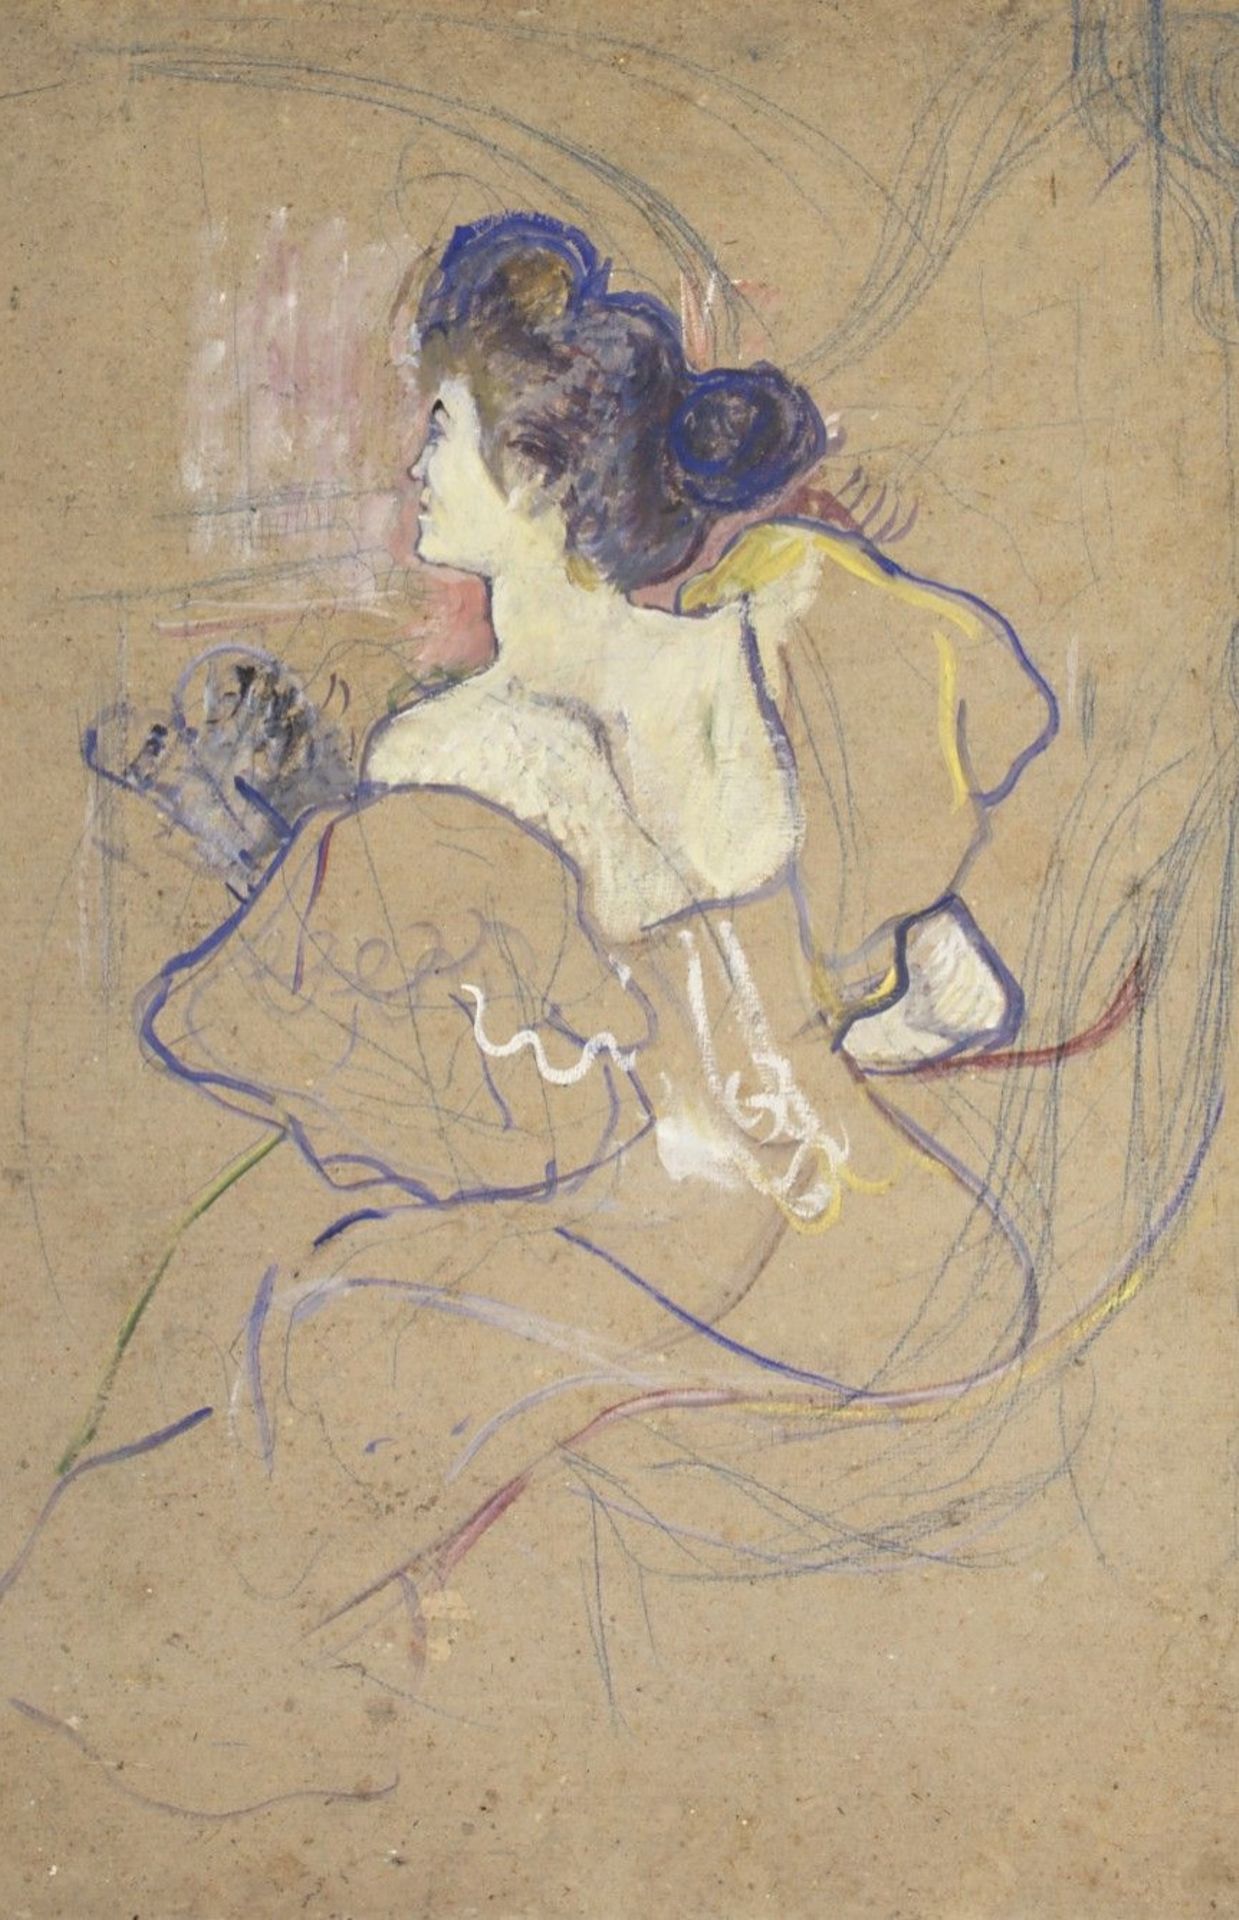 Misia au théâtre, par Toulouse-Lautrec, 1895.